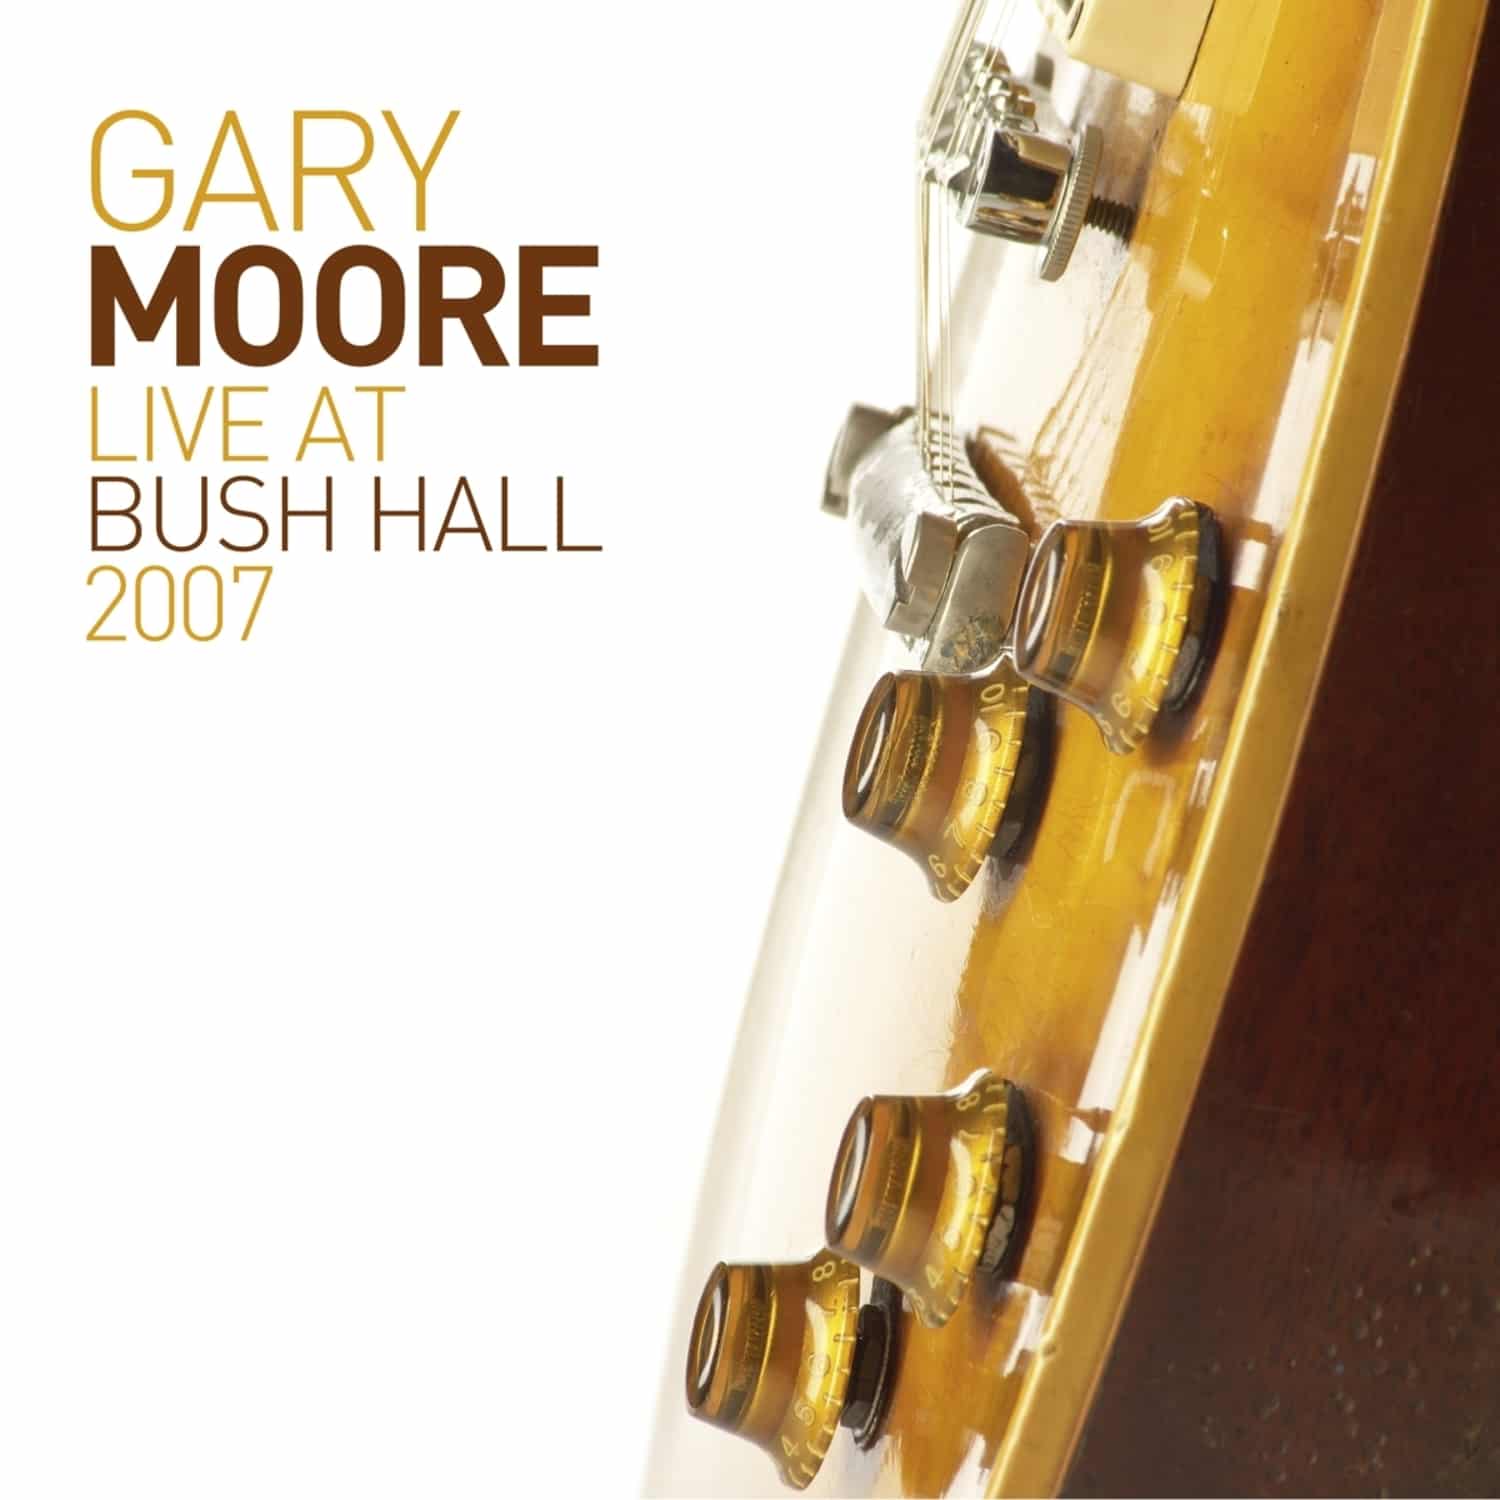 Gary Moore - LIVE AT BUSH HALL 2007 